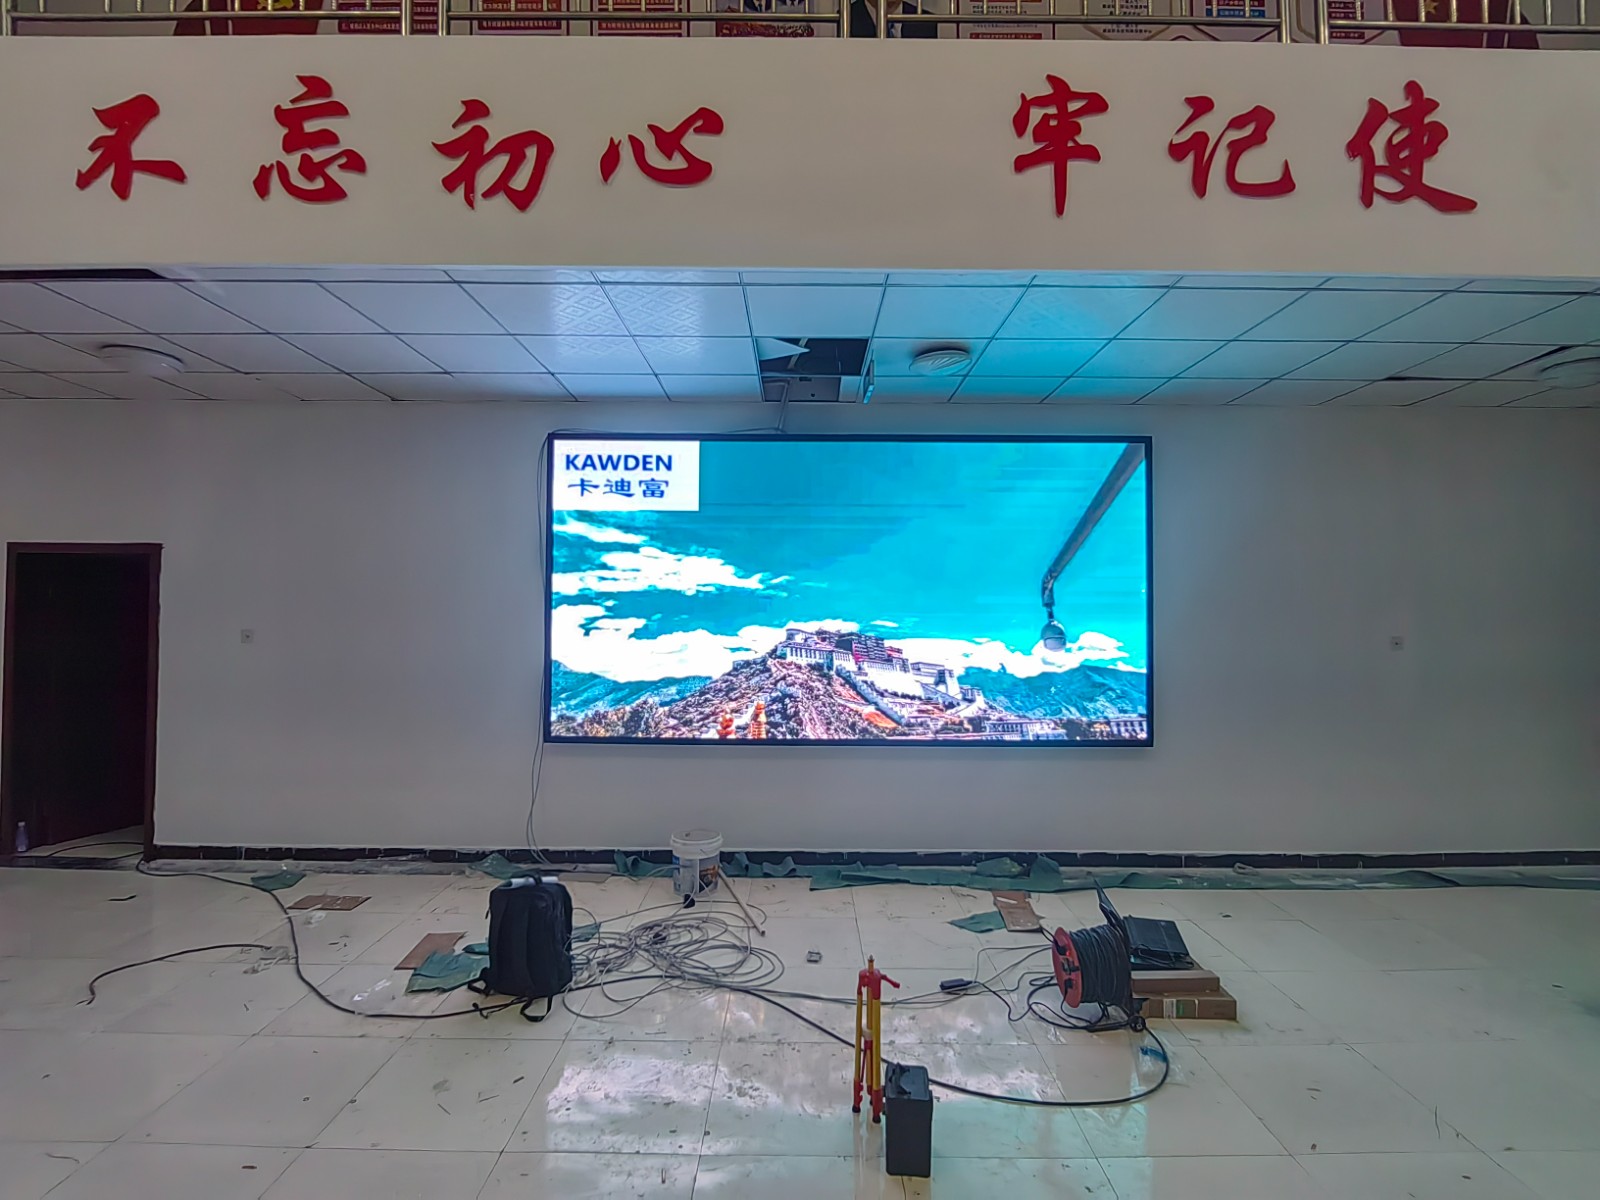 西藏拉萨市某通讯设备销售部项目P2.5led显示屏展示案例图片3